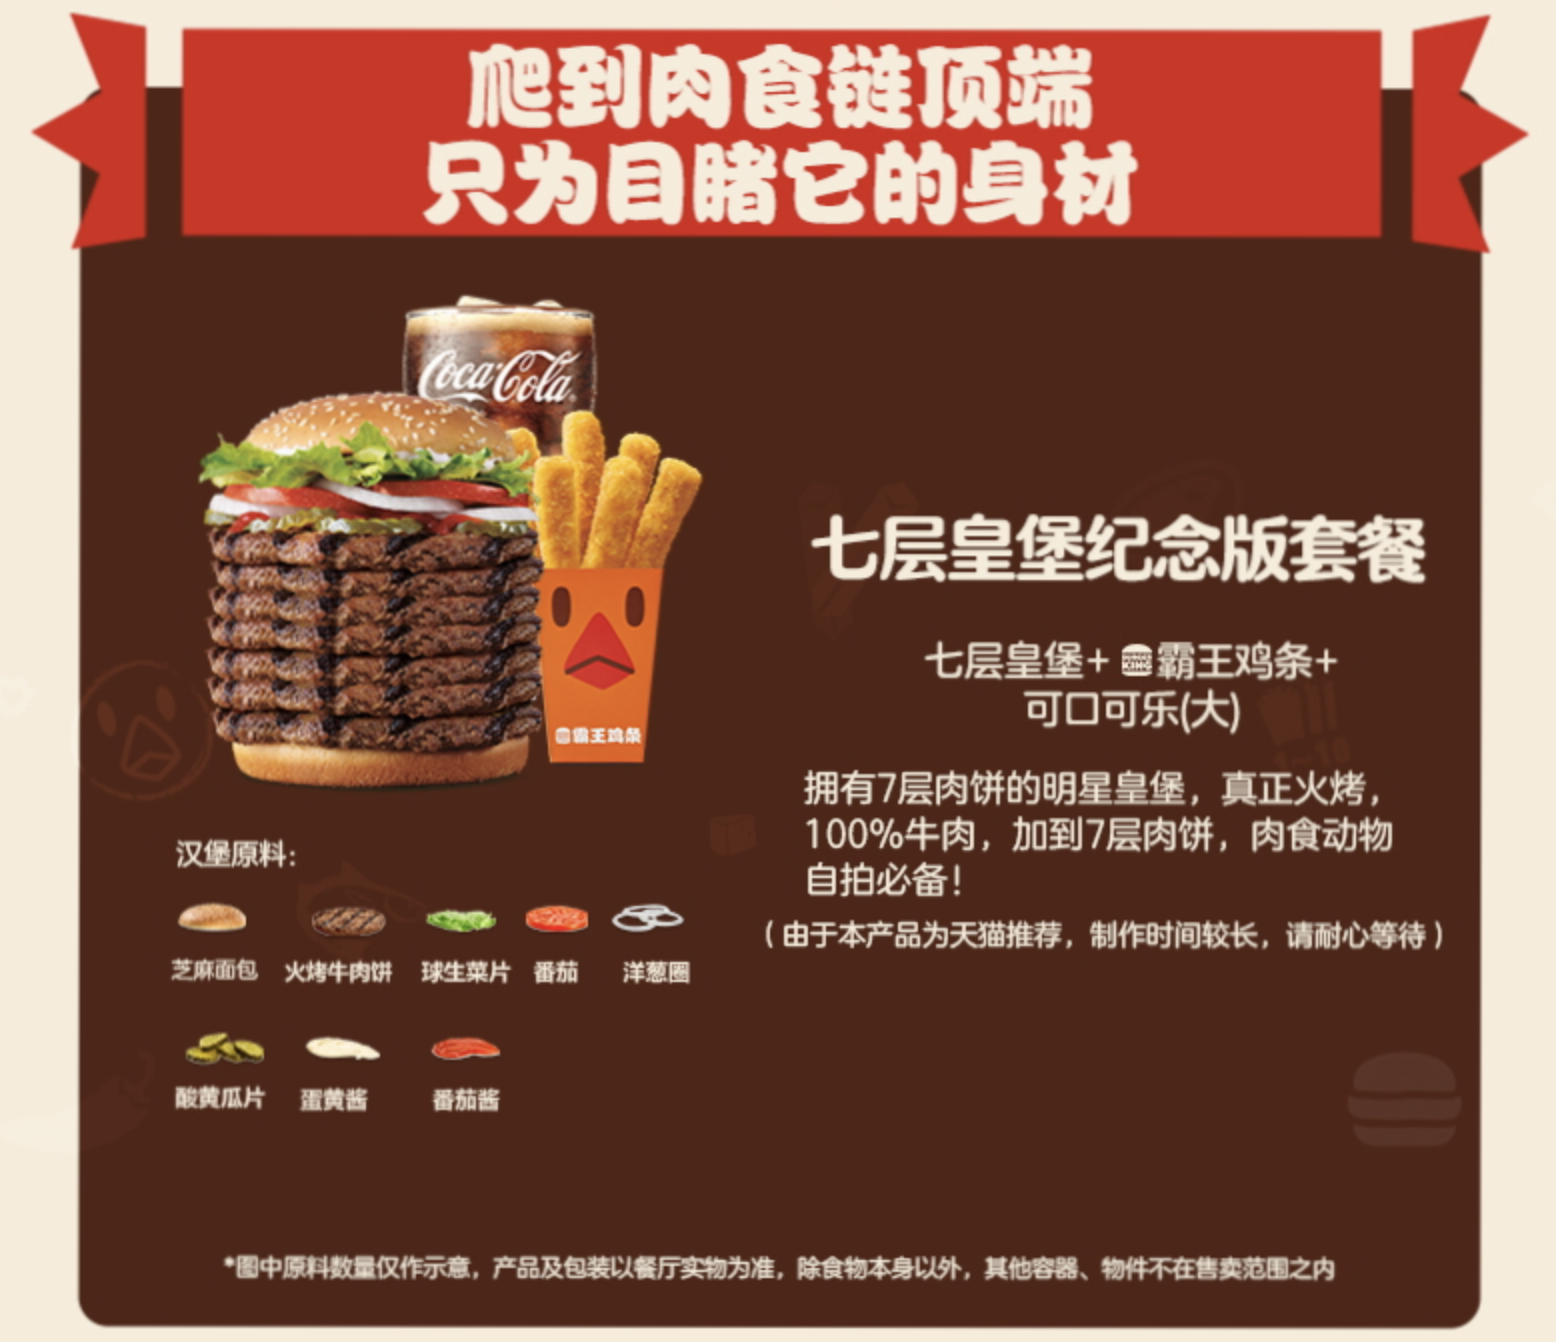 汉堡王在中国不火是因为口味、价格、还是营销？ - 2019年4月26日 虎扑存档 - 看帖神器